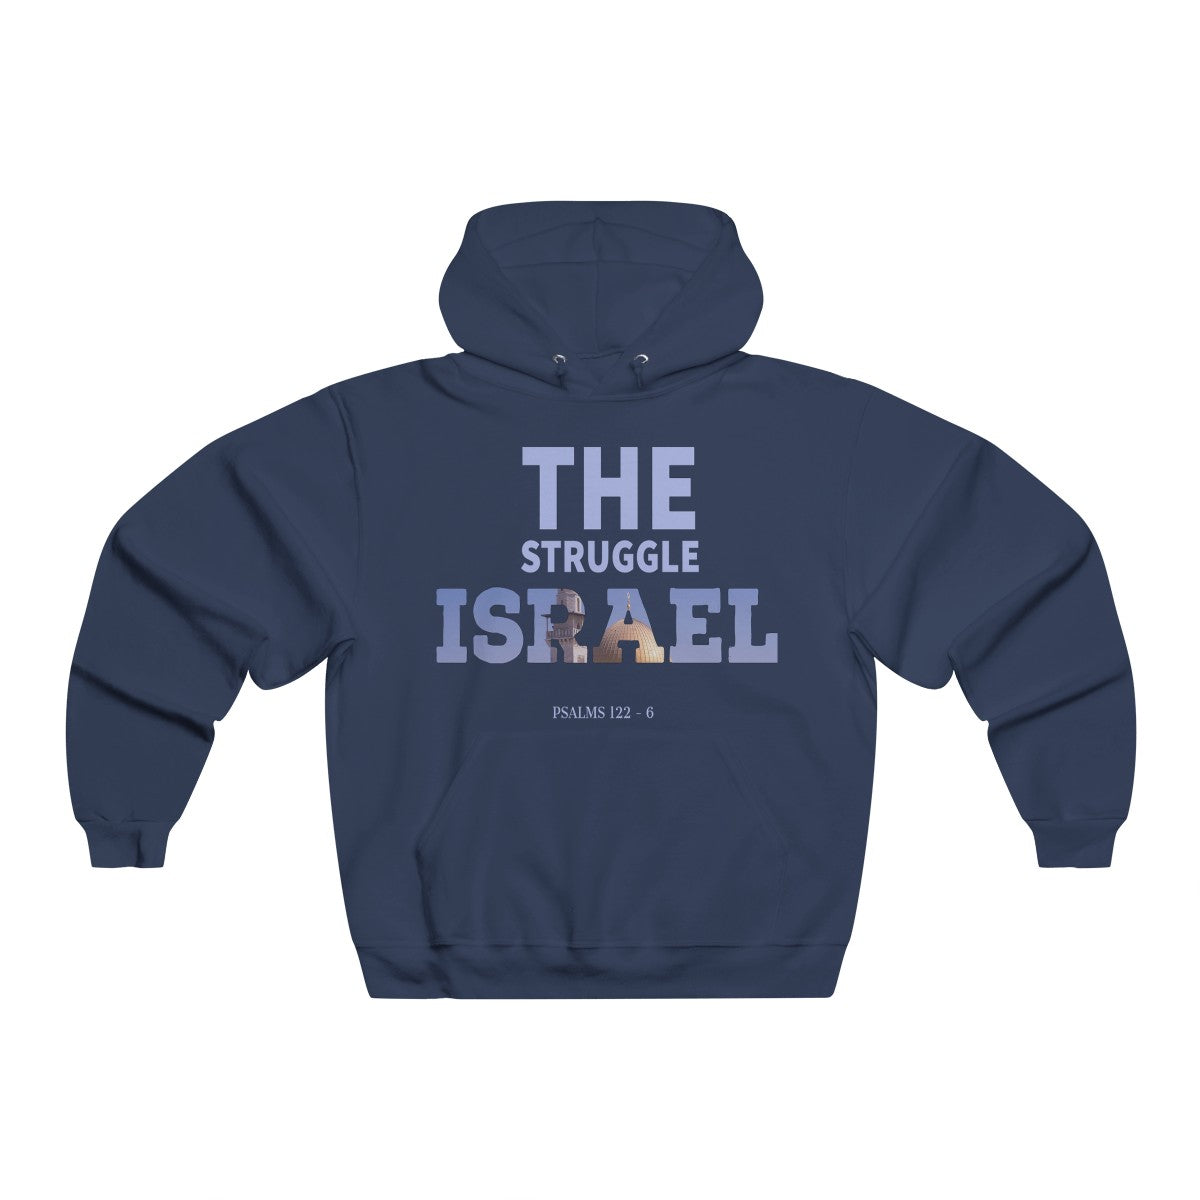 The Struggle Israel Printed Hoodie Sweatshirt for Men or Women